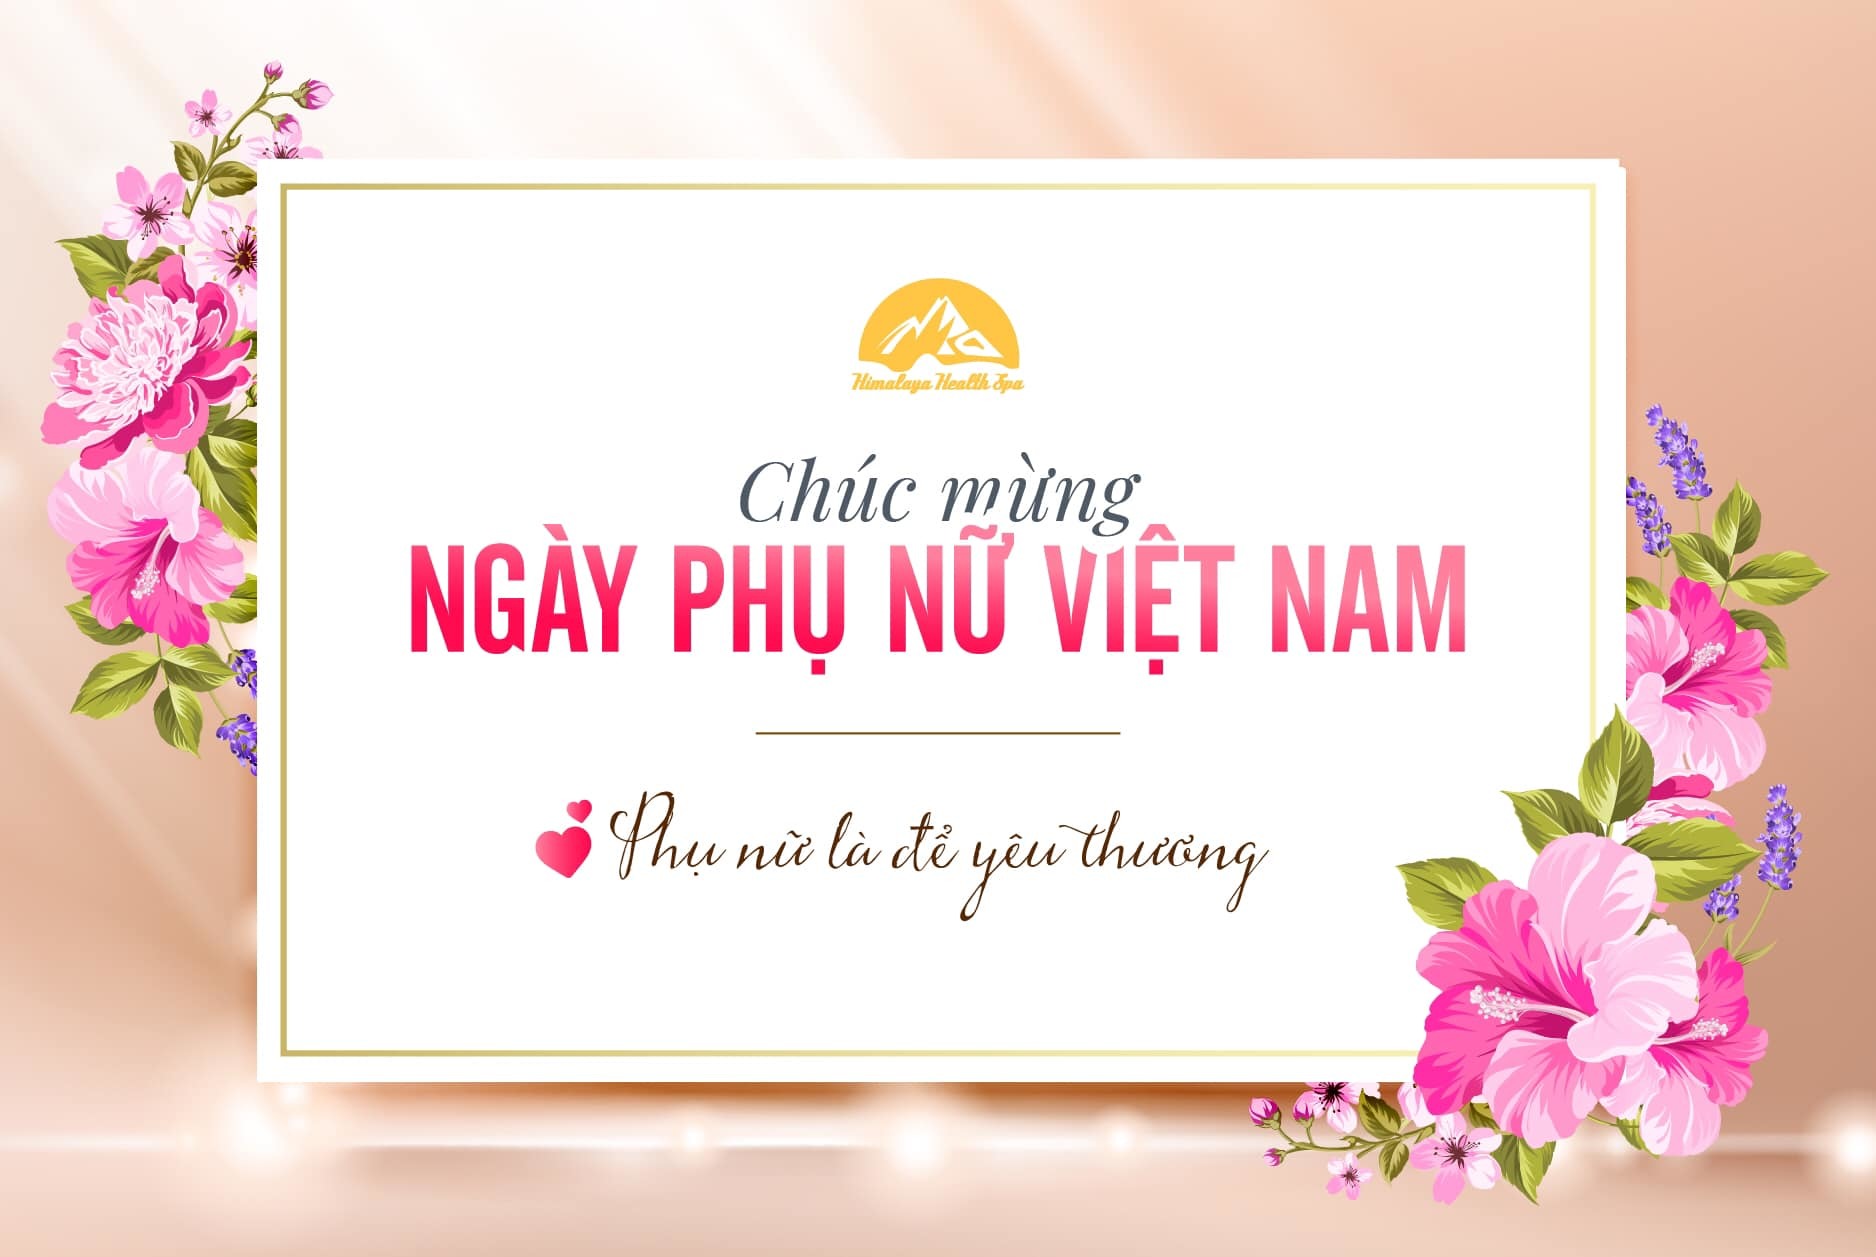 Himalaya Spa chúc mừng ngày phụ nữ Việt Nam! - Himalaya Spa